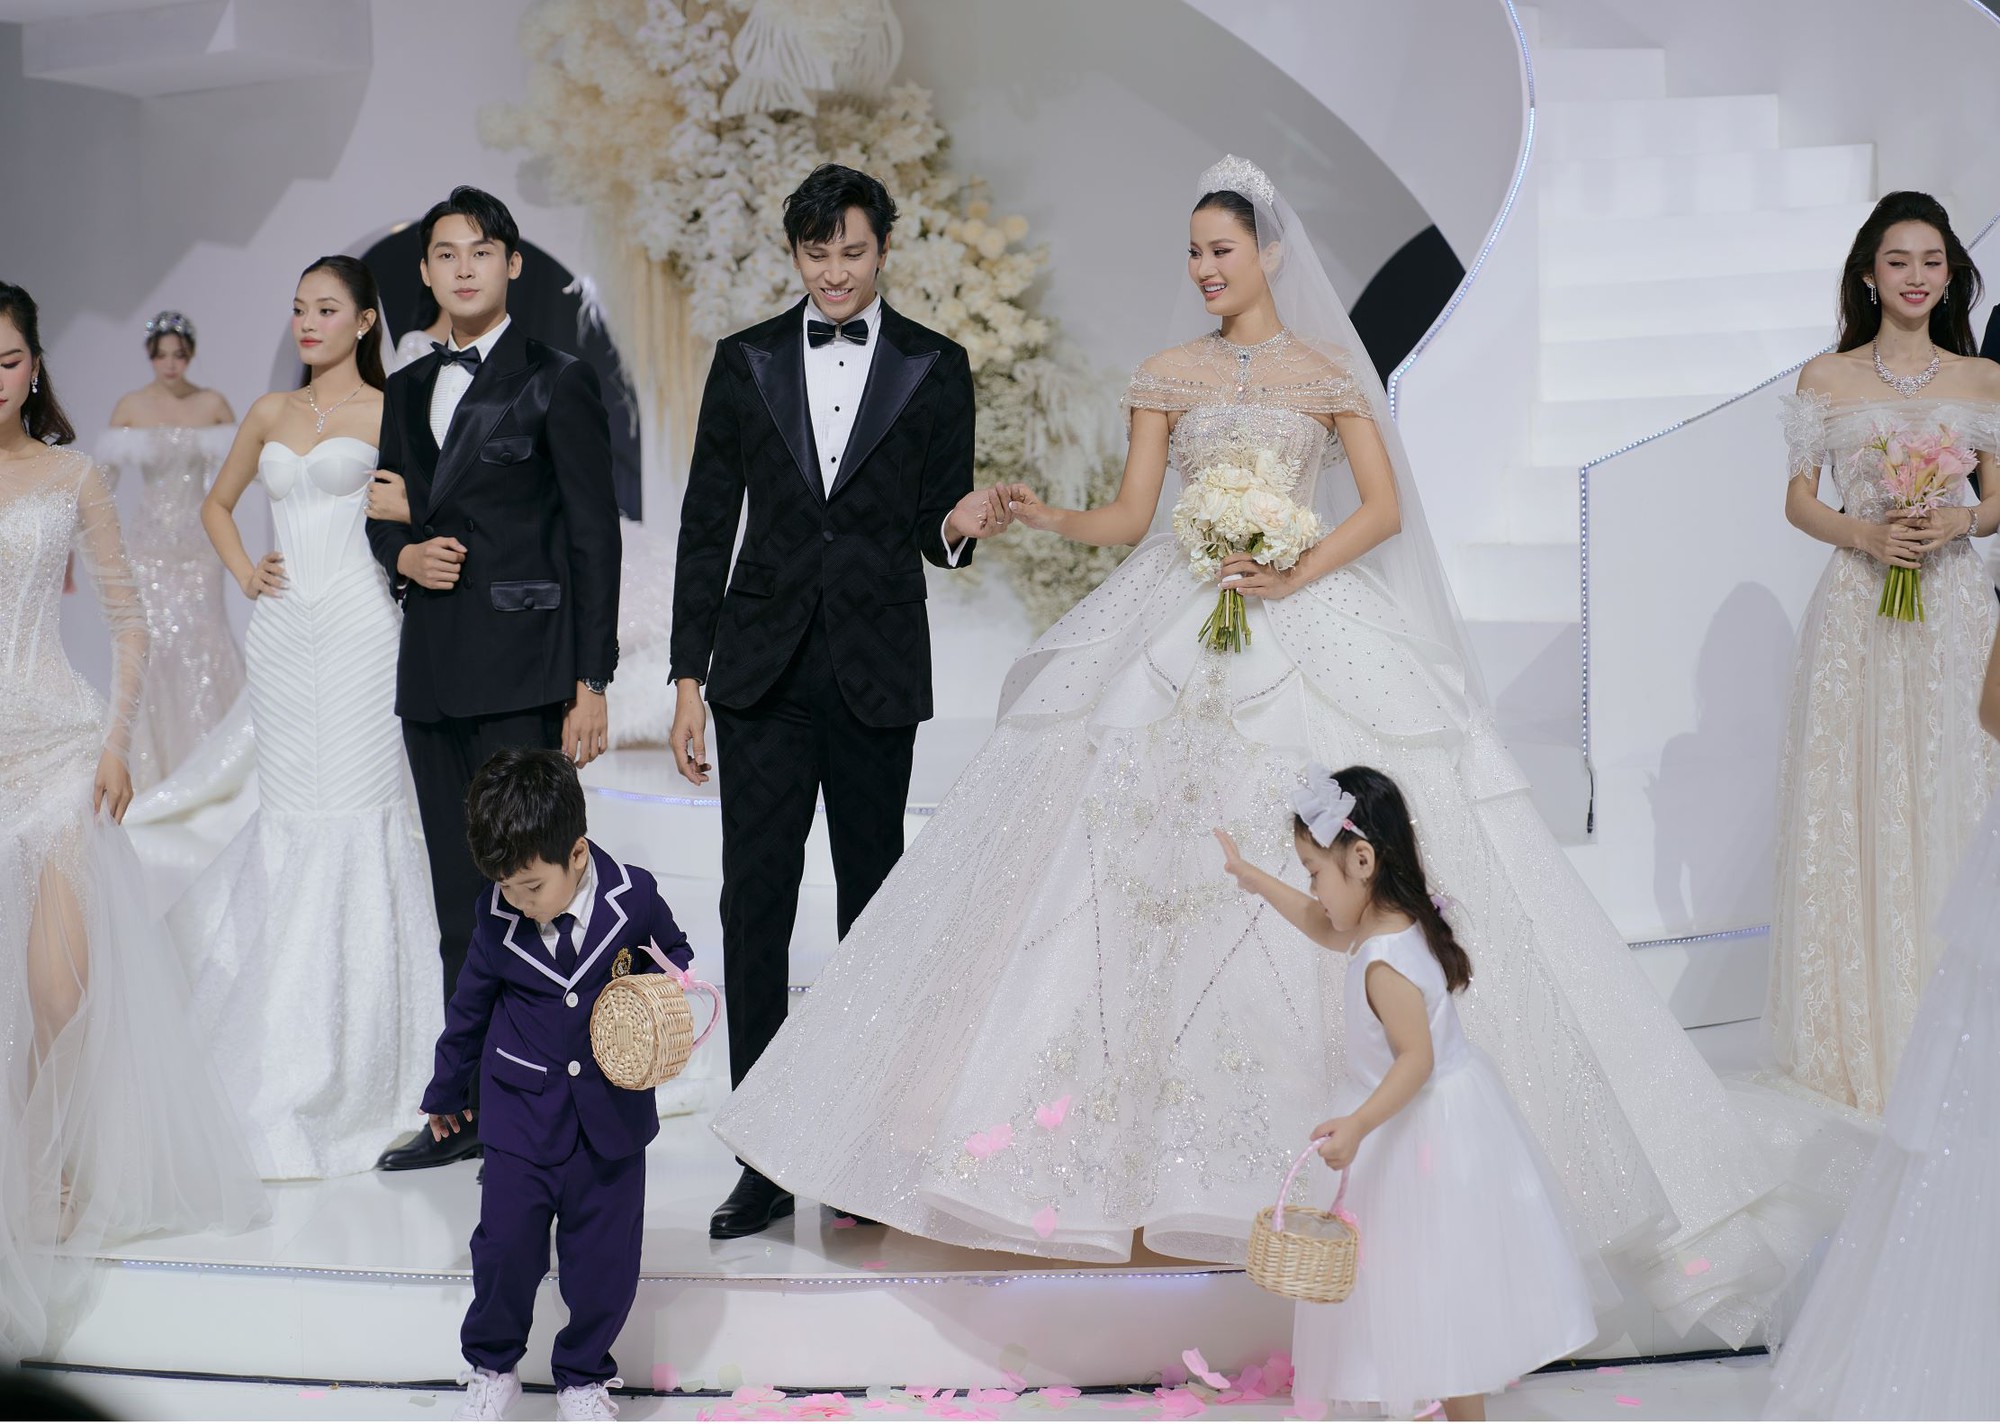 Á hậu Hương Ly cùng dàn người đẹp lộng lẫy trên sàn diễn thời trang áo cưới - Ảnh 7.